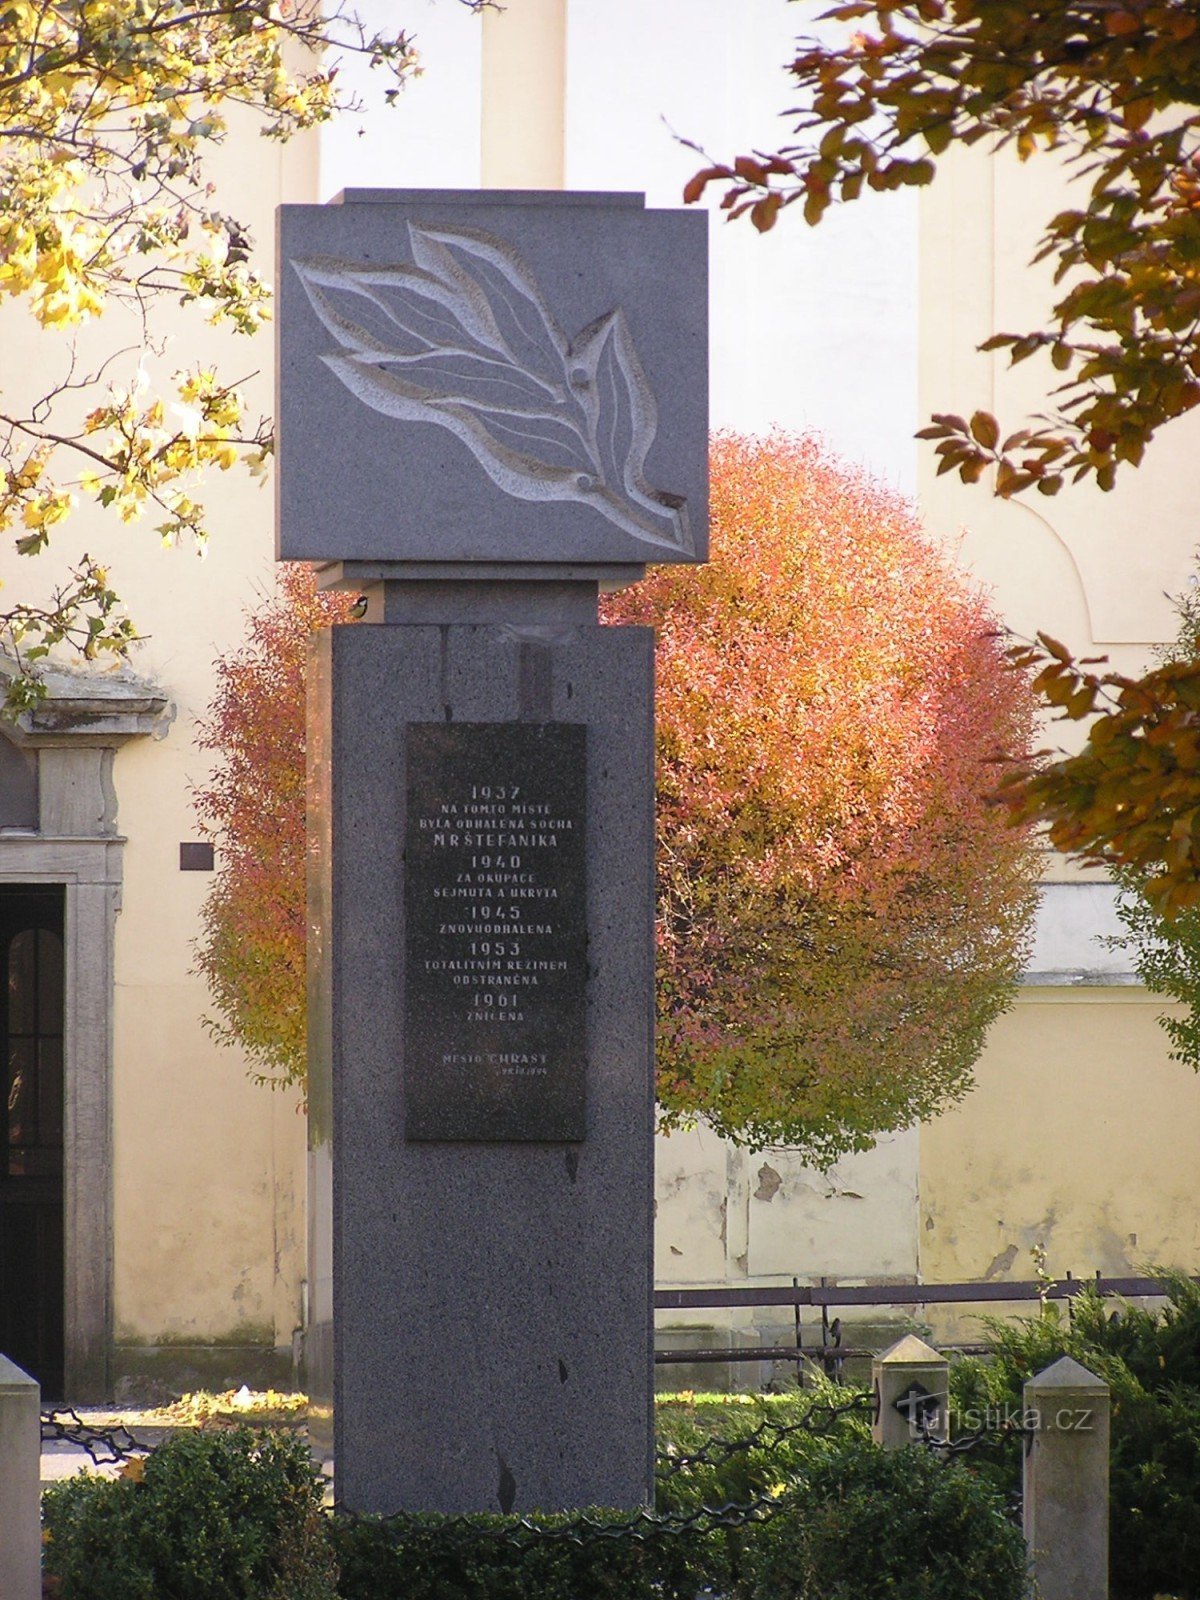 Μνημείο για τα θύματα των πολέμων